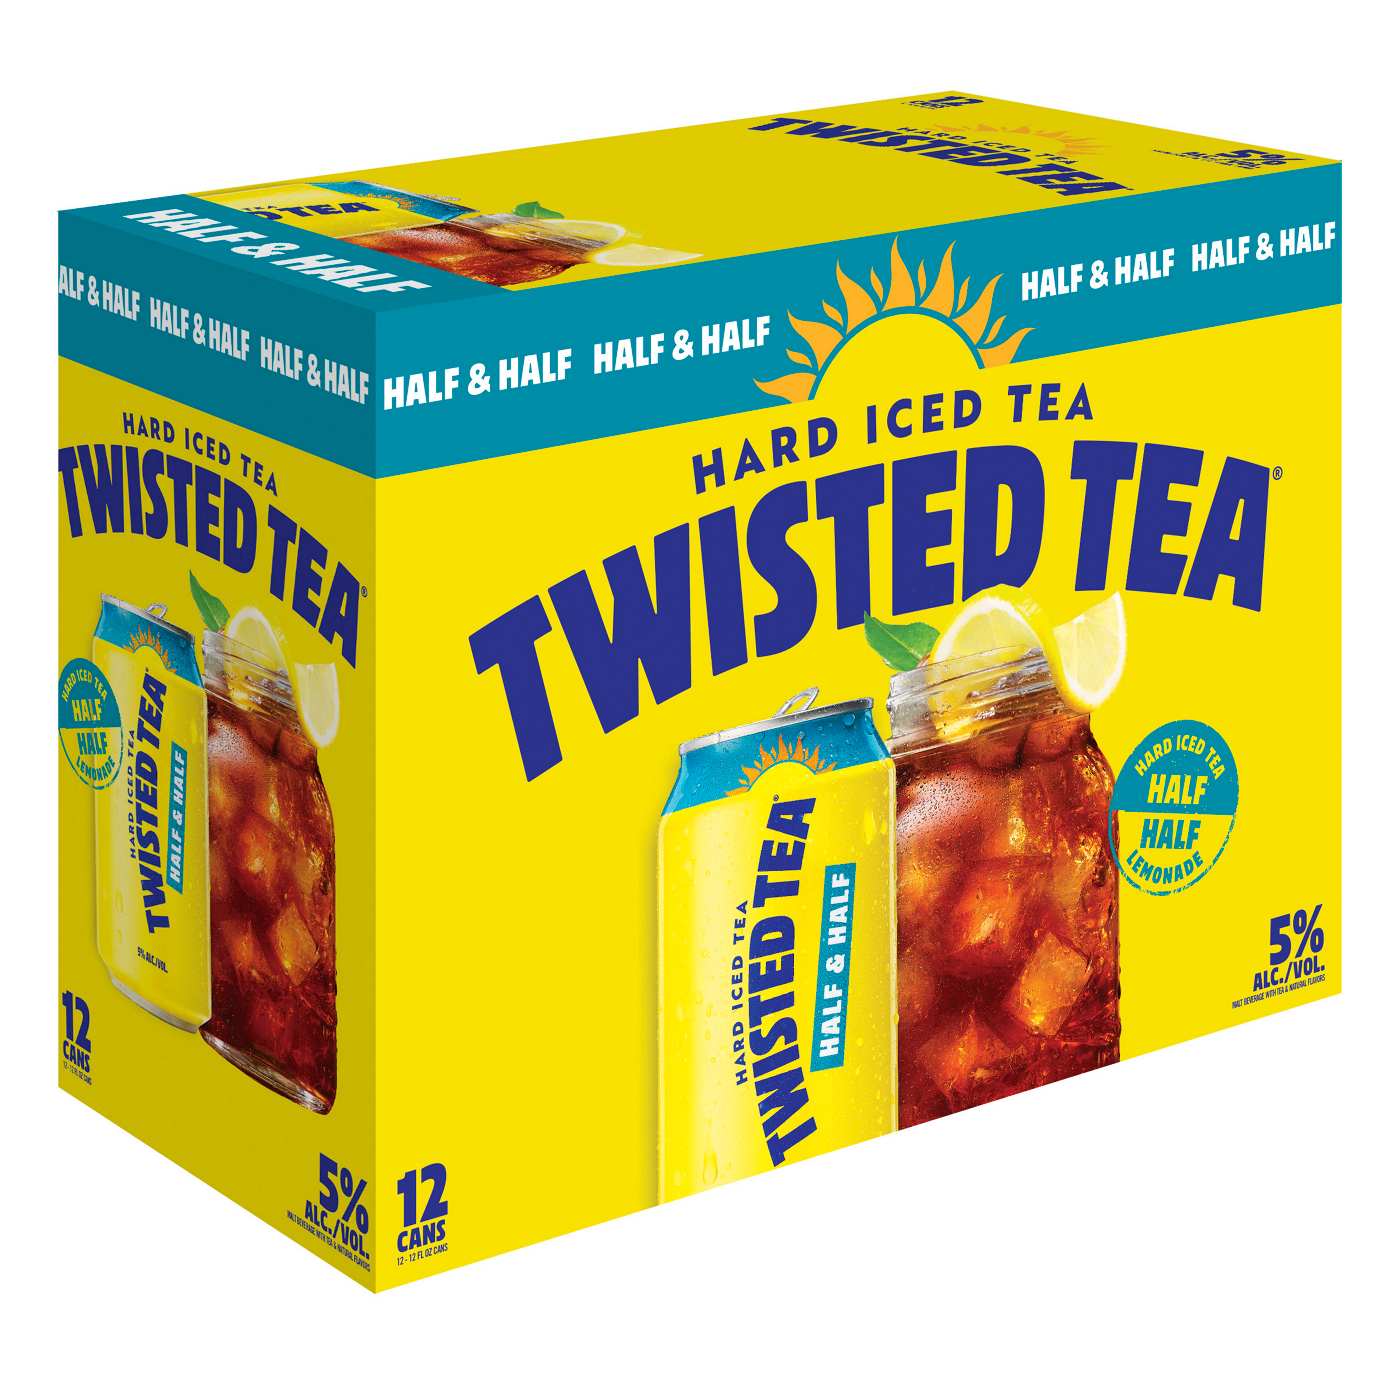 Twisted Tea Hard Iced Tea Half & Half 12 pk Cans; image 2 of 2